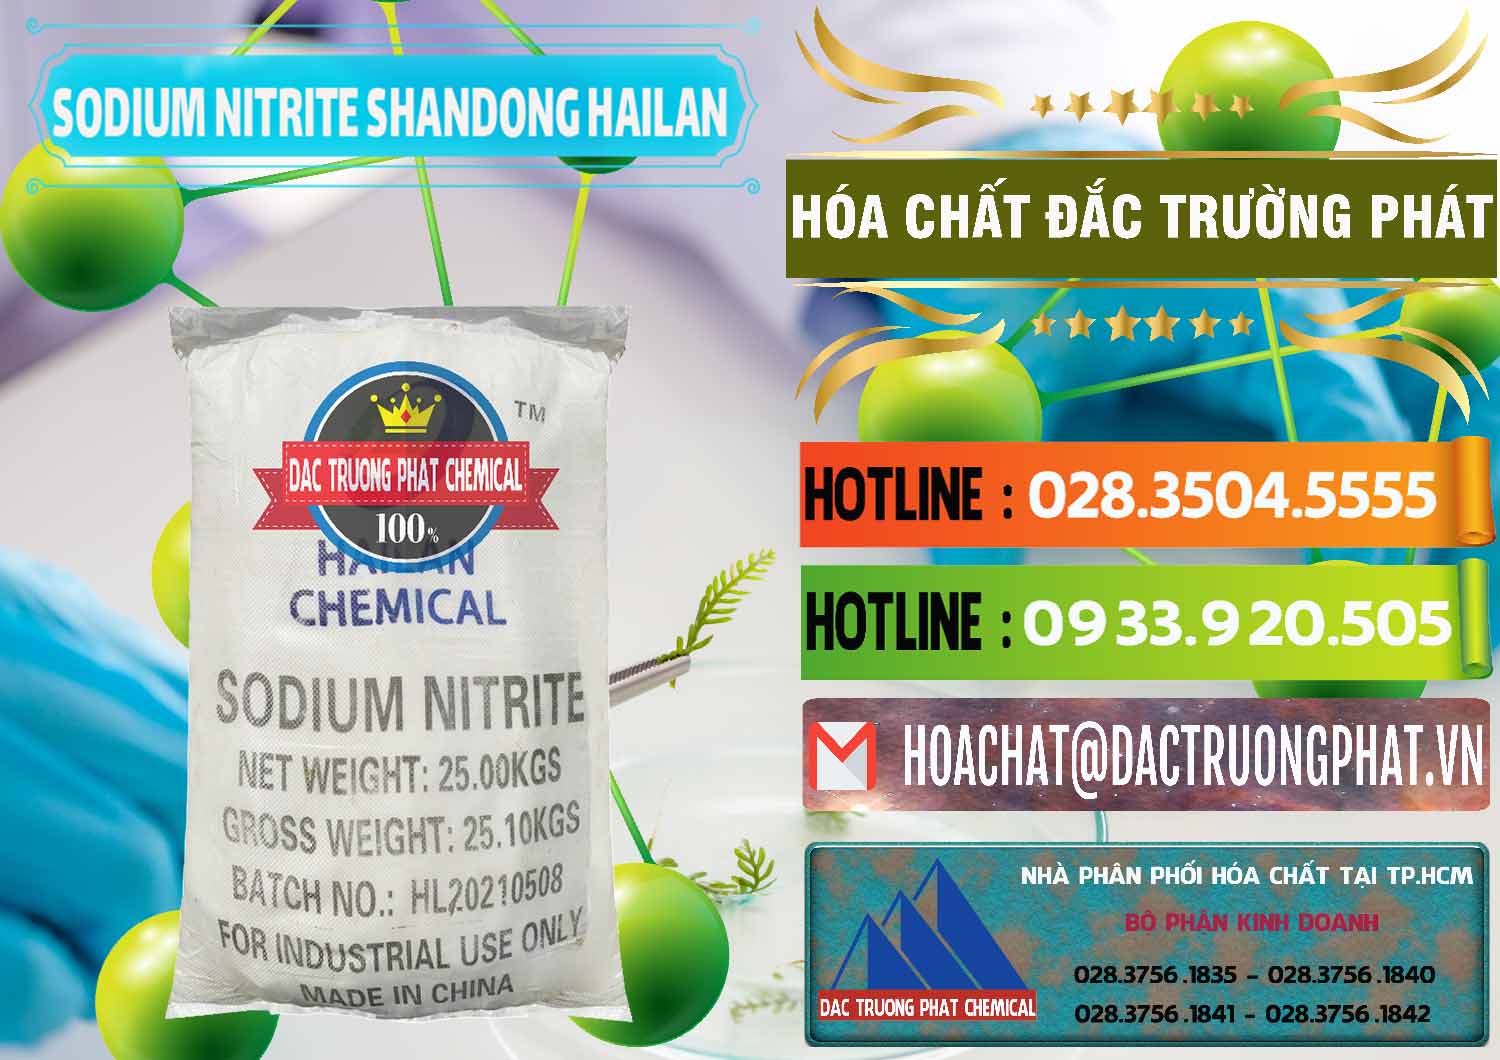 Kinh doanh & bán Sodium Nitrite - NANO2 99.3% Shandong Hailan Trung Quốc China - 0284 - Chuyên cung ứng - phân phối hóa chất tại TP.HCM - cungcaphoachat.com.vn